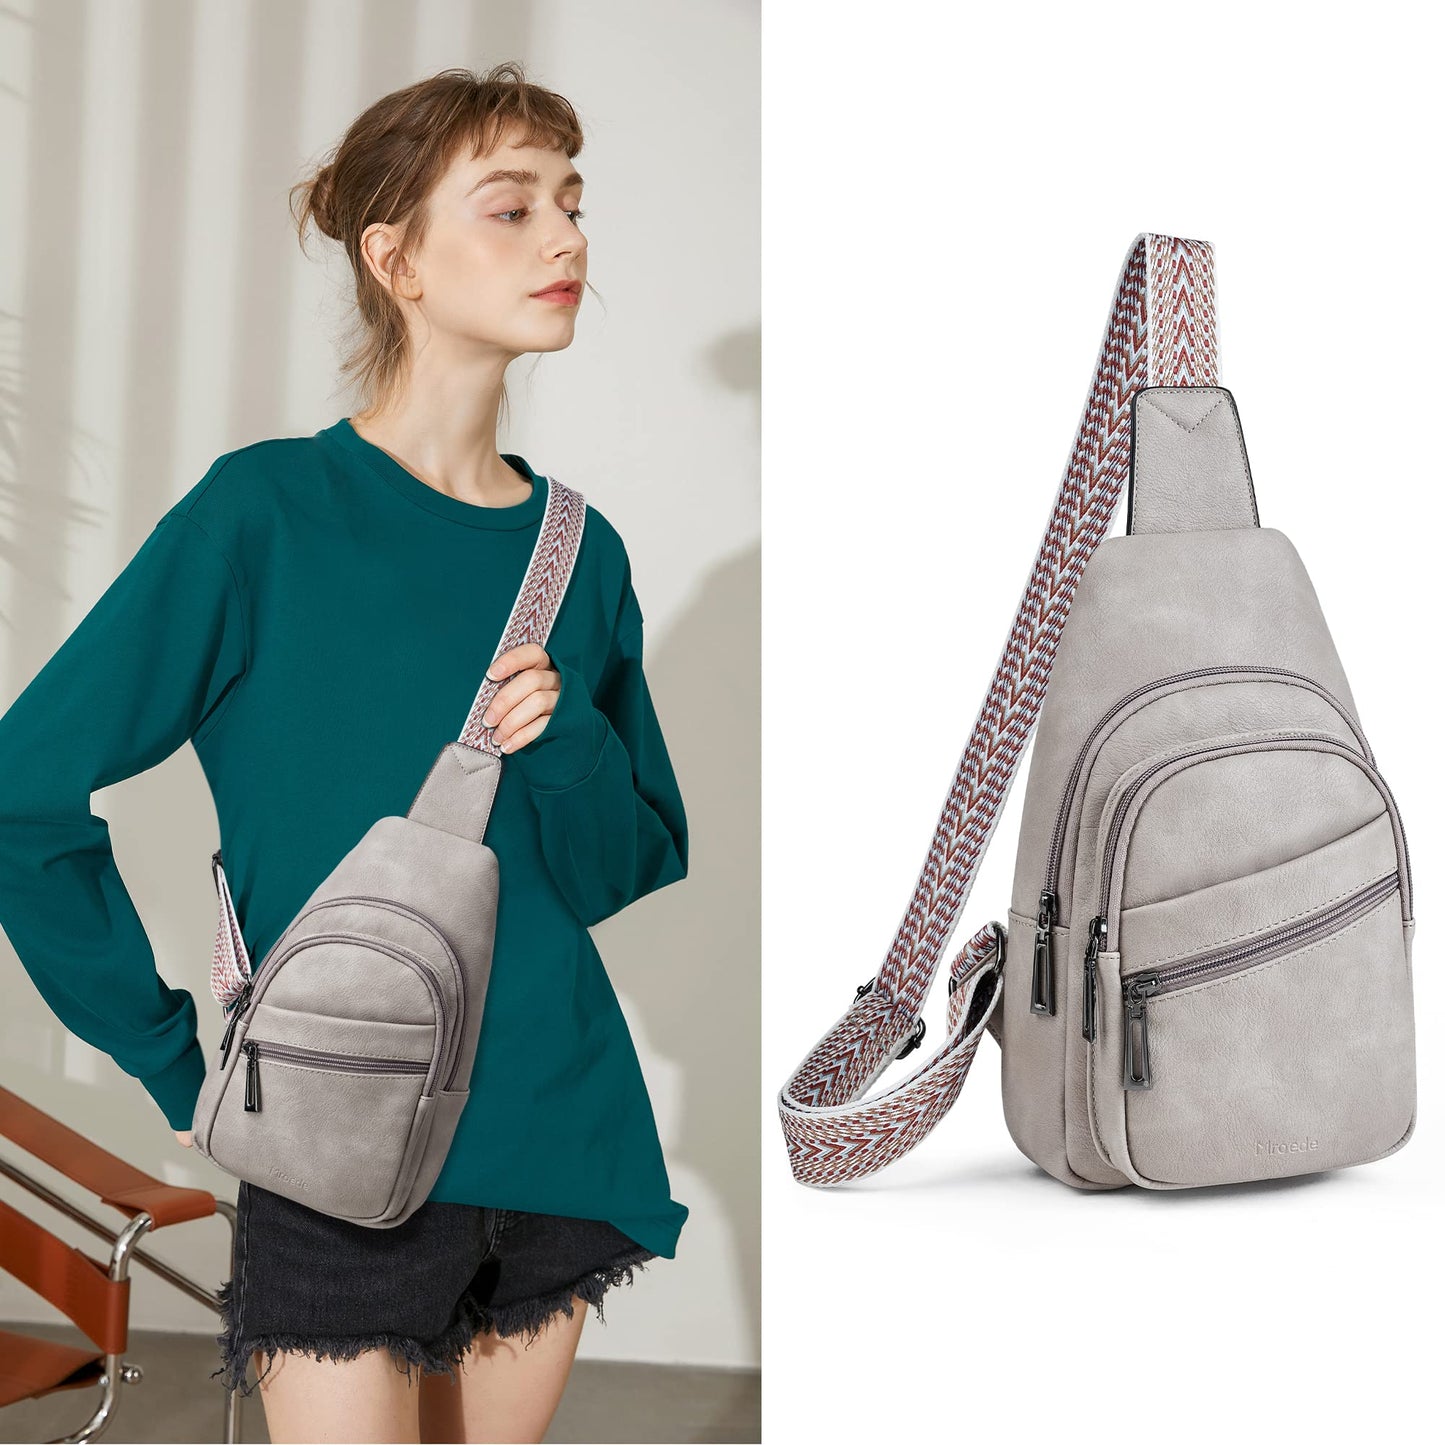 Mroede Sling Bag Crossbody Bags for Women 5 Pockets, Fanny Packs for Women Chest Bag for Work Shopping